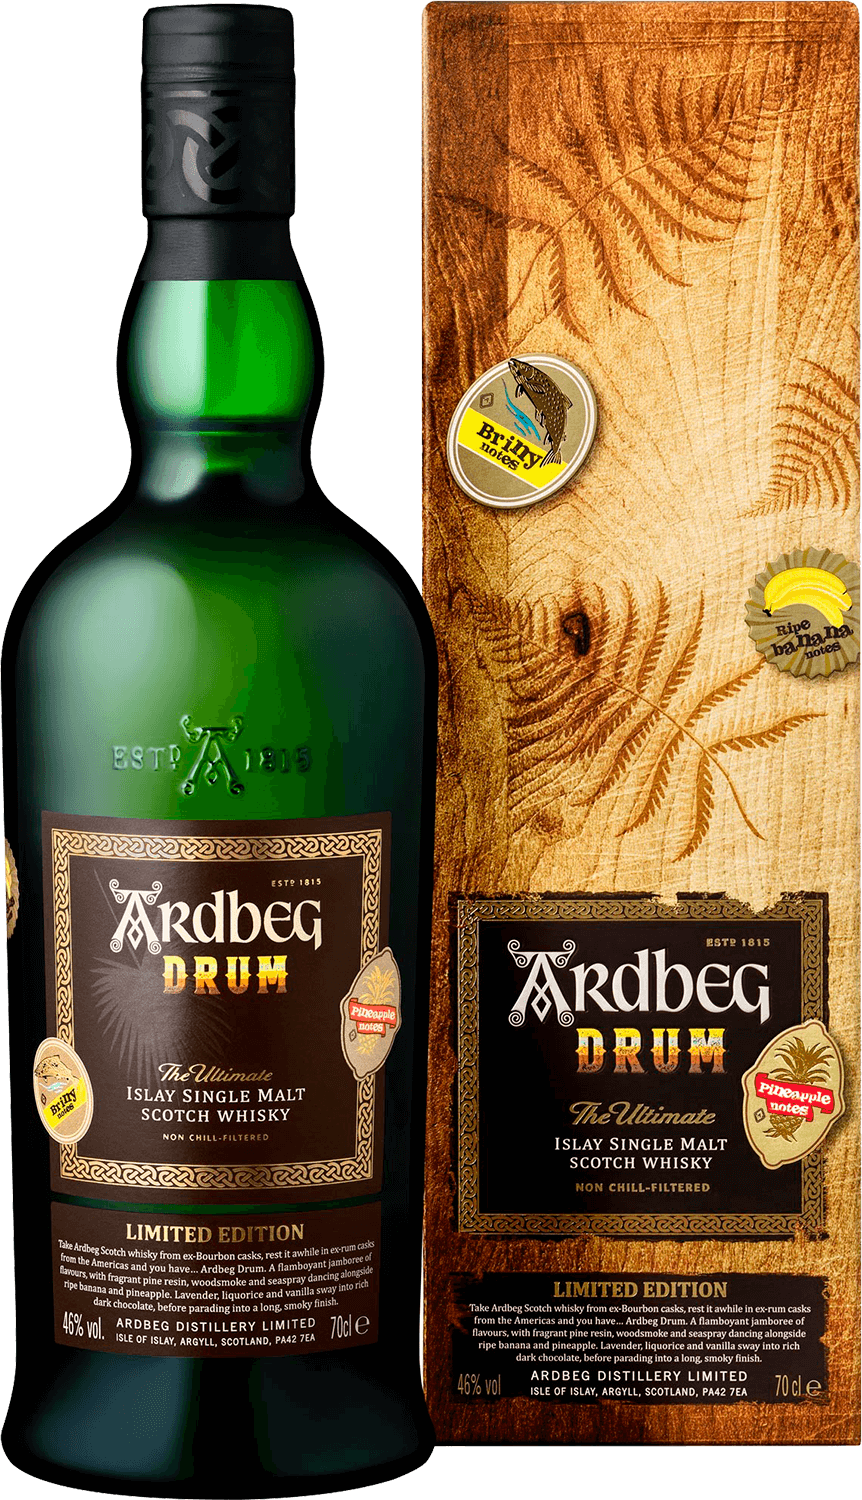 Ardbeg Drum Islay Single Malt Scotch Whisky (gift box) bunnahabhain islay single malt scotch whisky 12 y o gift box